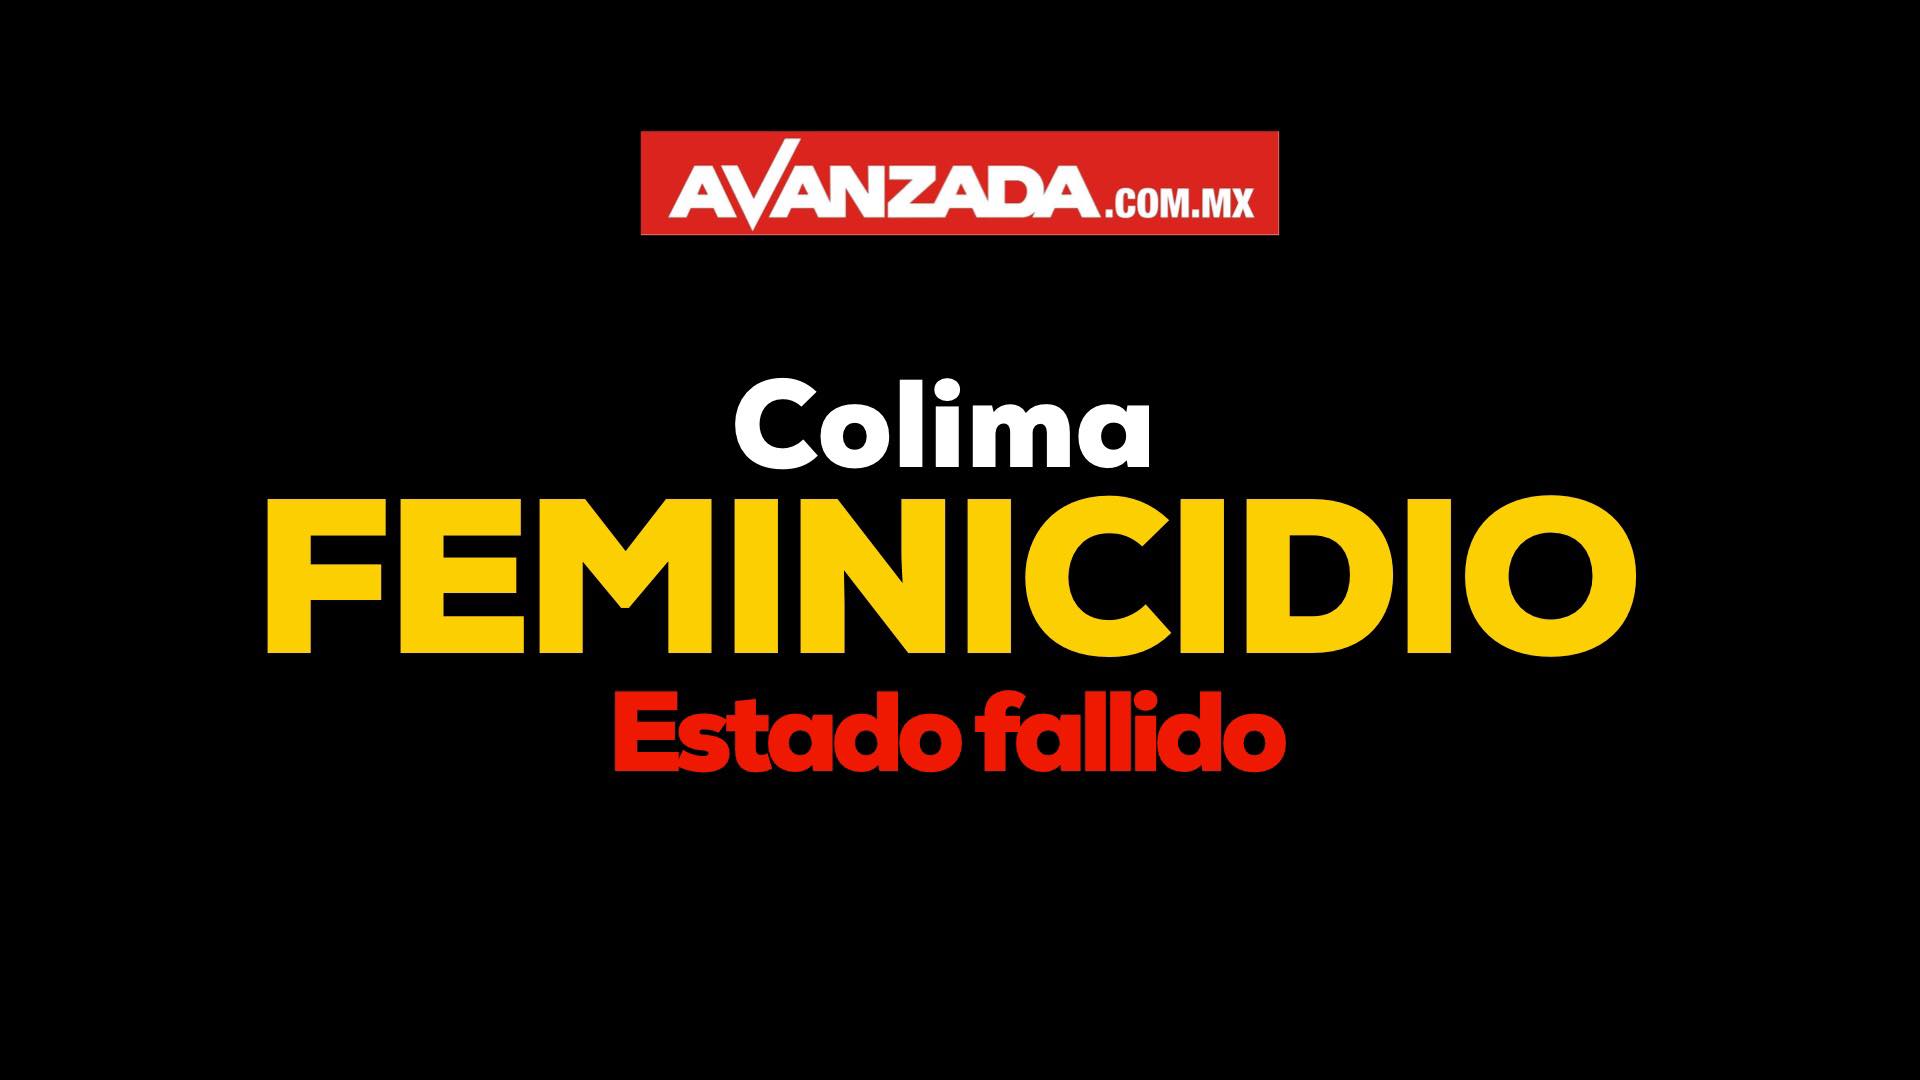 Colima “se corona” con la tasa más alta de asesinatos de mujeres en el primer semestre de 2019